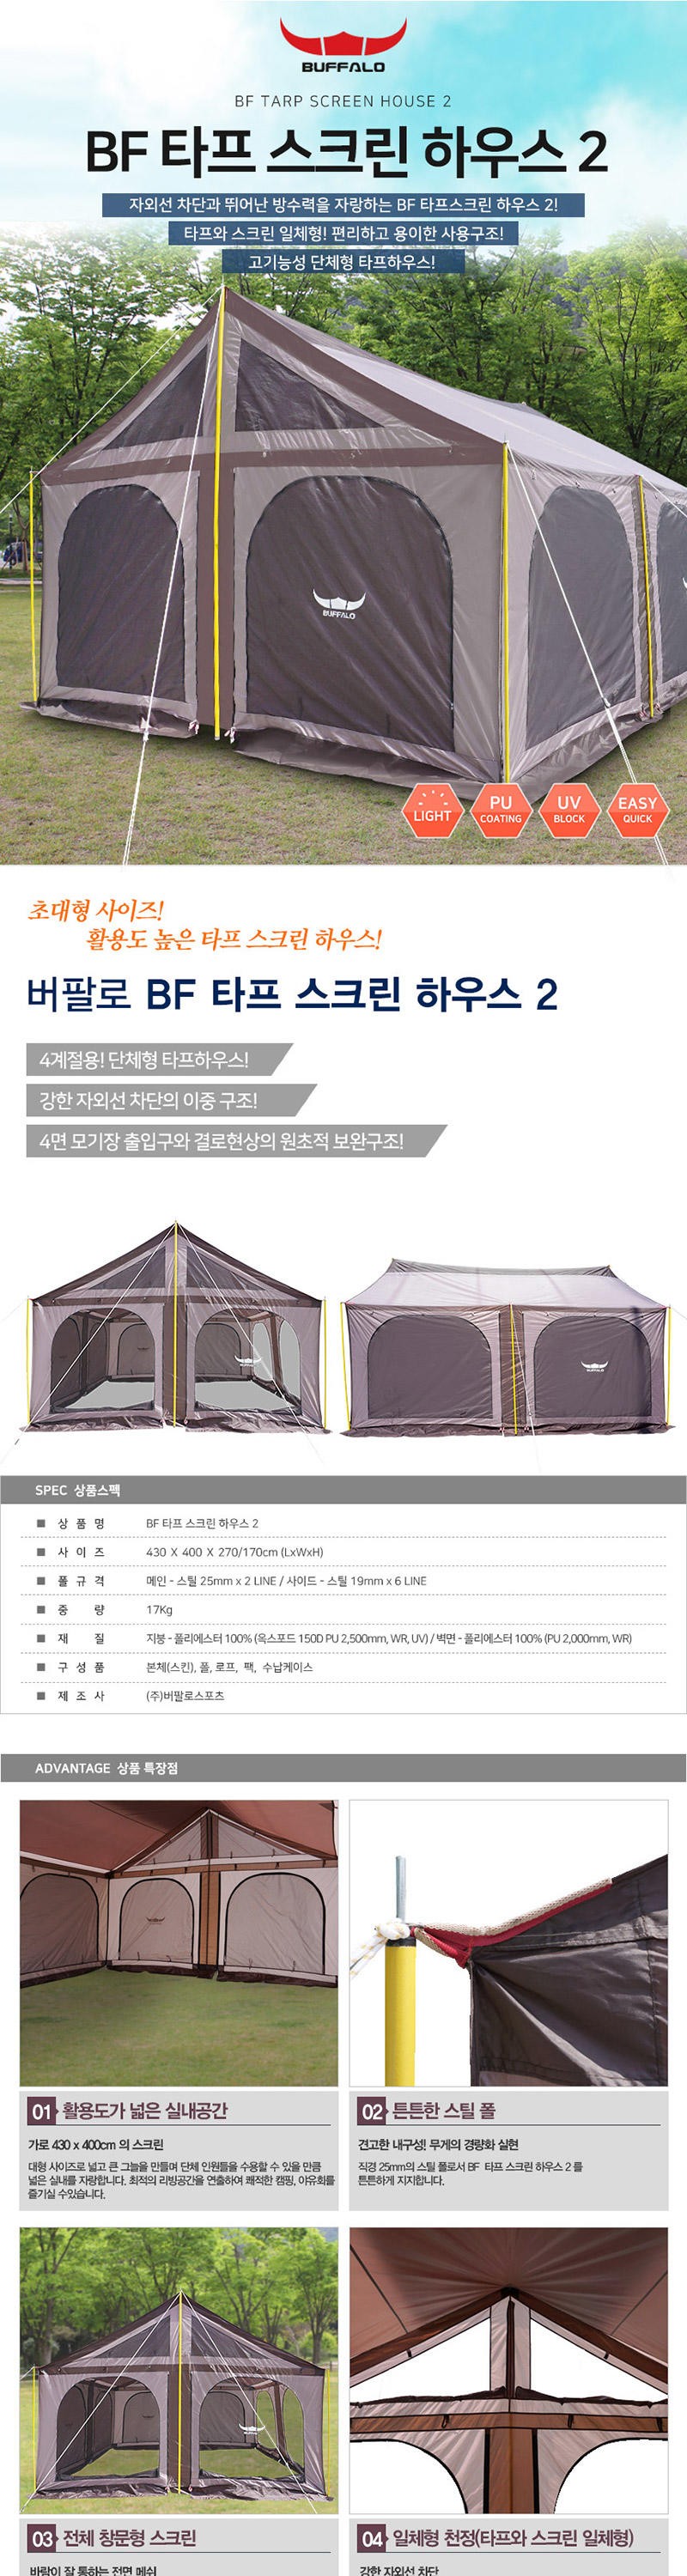 (새제품)버팔로 BF 타프스크린 하우스2 텐트/차양막 일체형